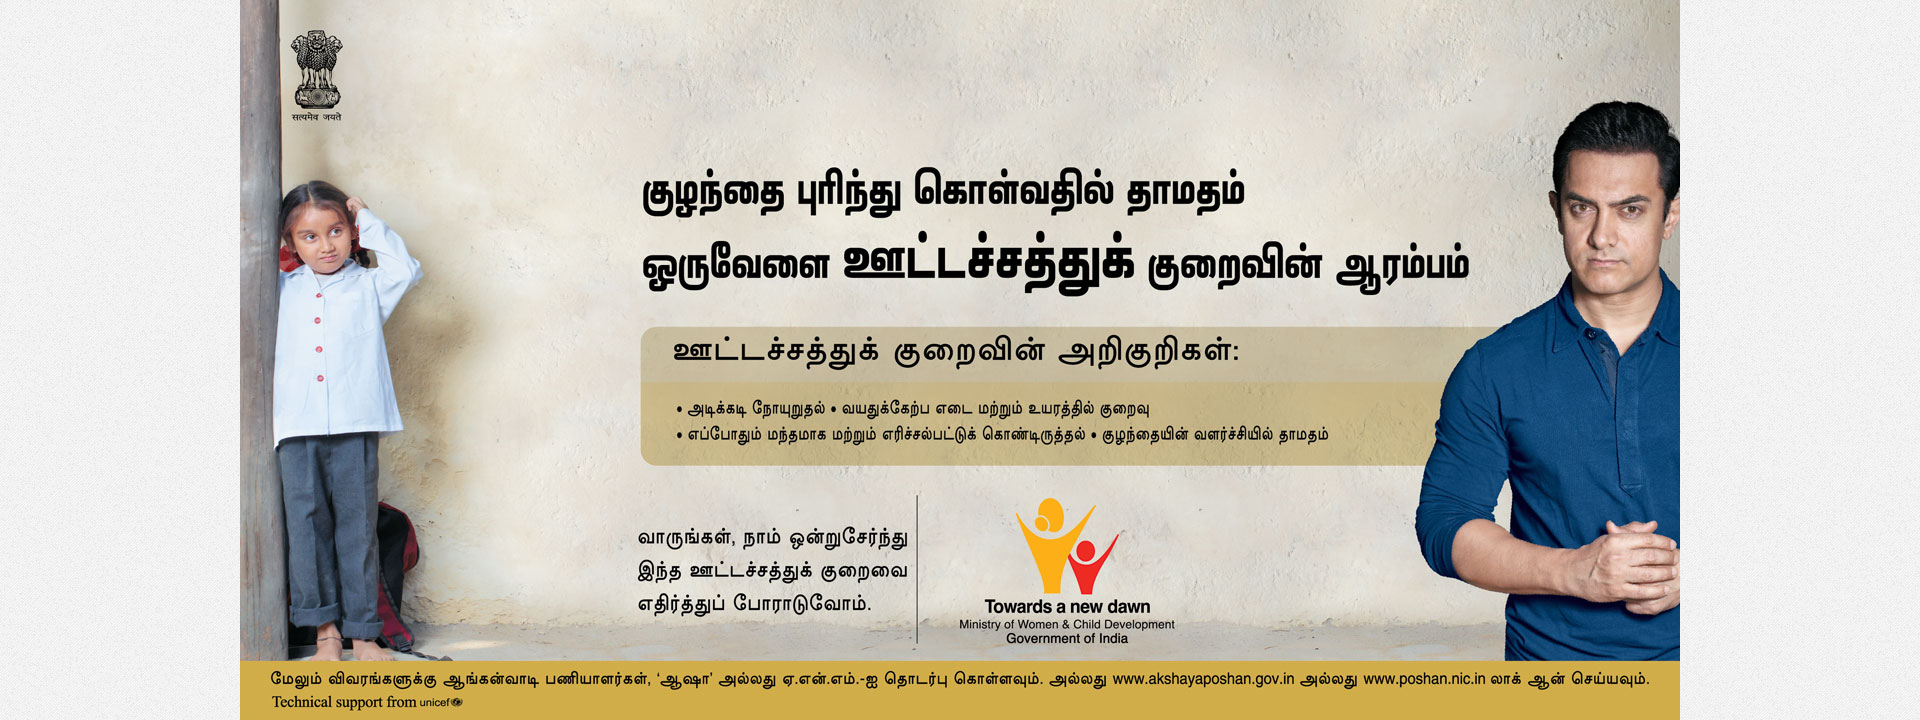 Unicef Meaning In Tamil - Unicef Meaning In Tamil ...